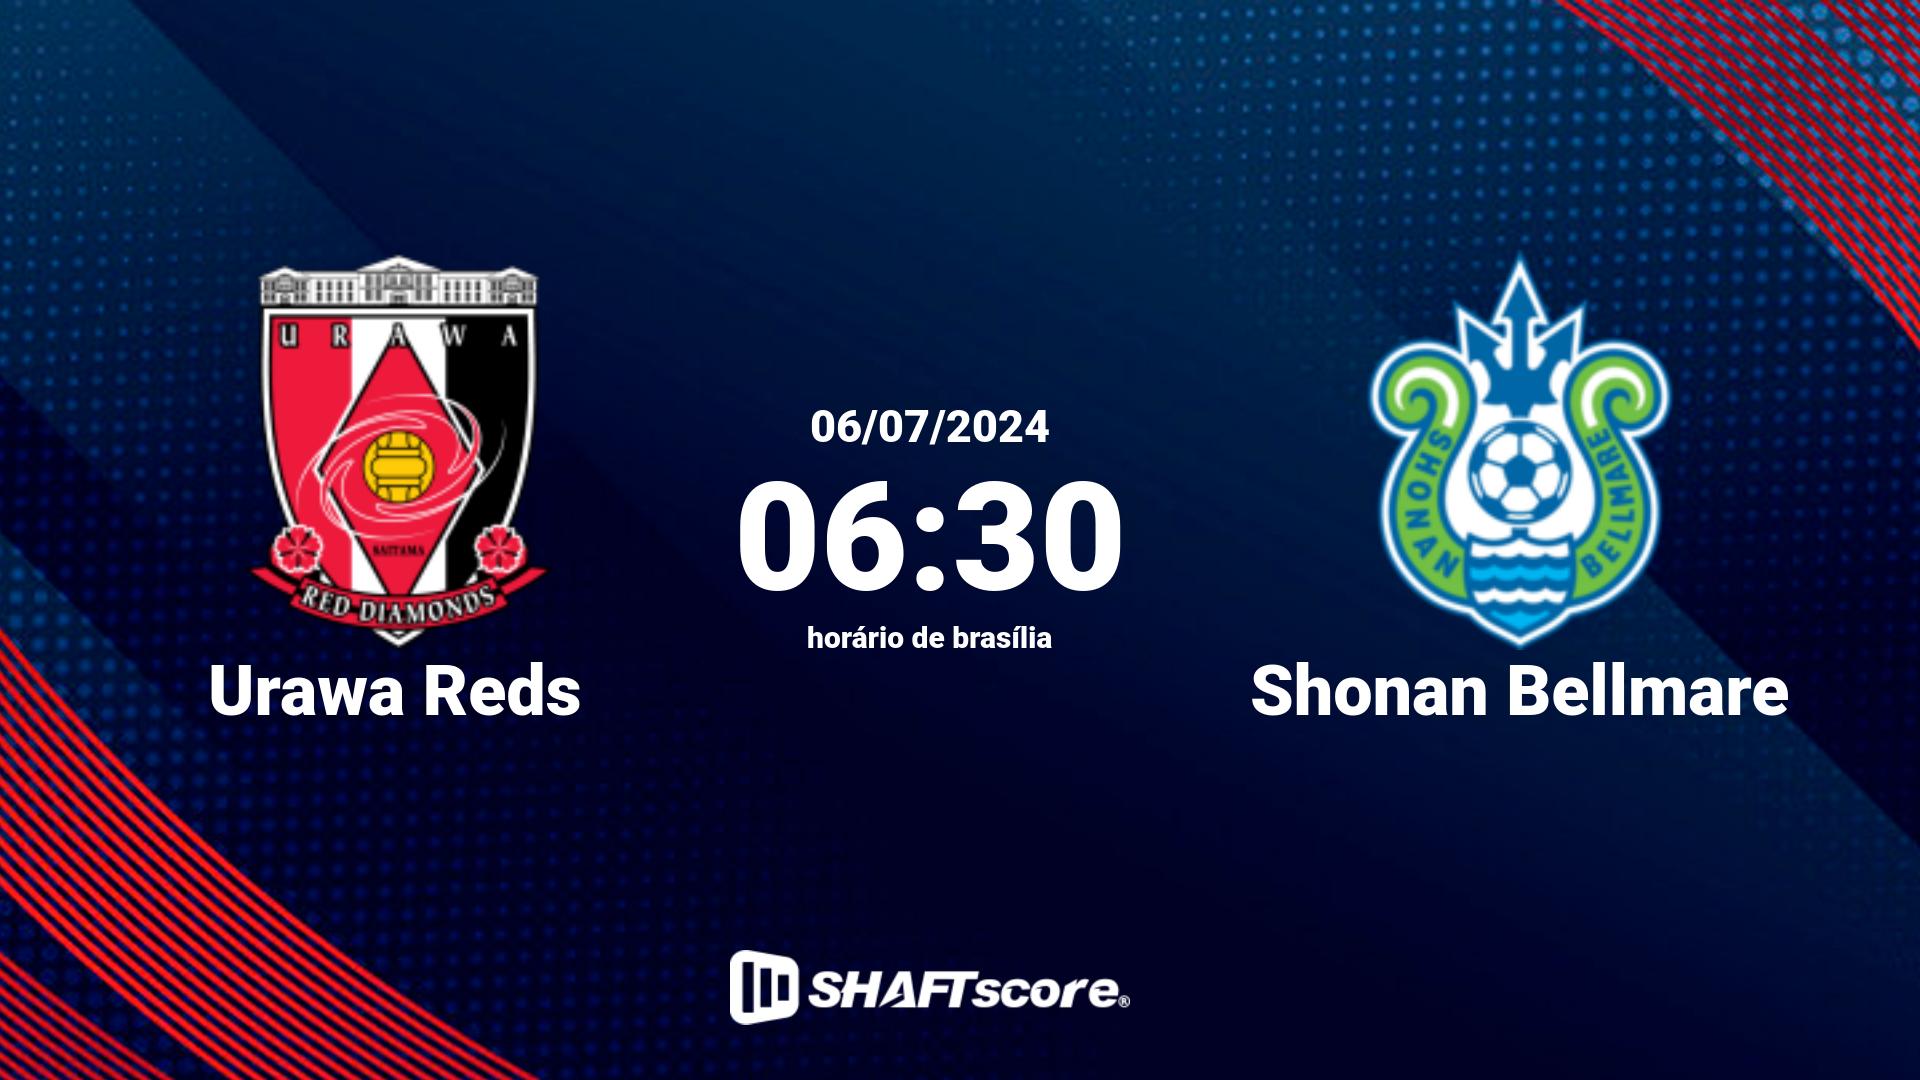 Estatísticas do jogo Urawa Reds vs Shonan Bellmare 06.07 06:30